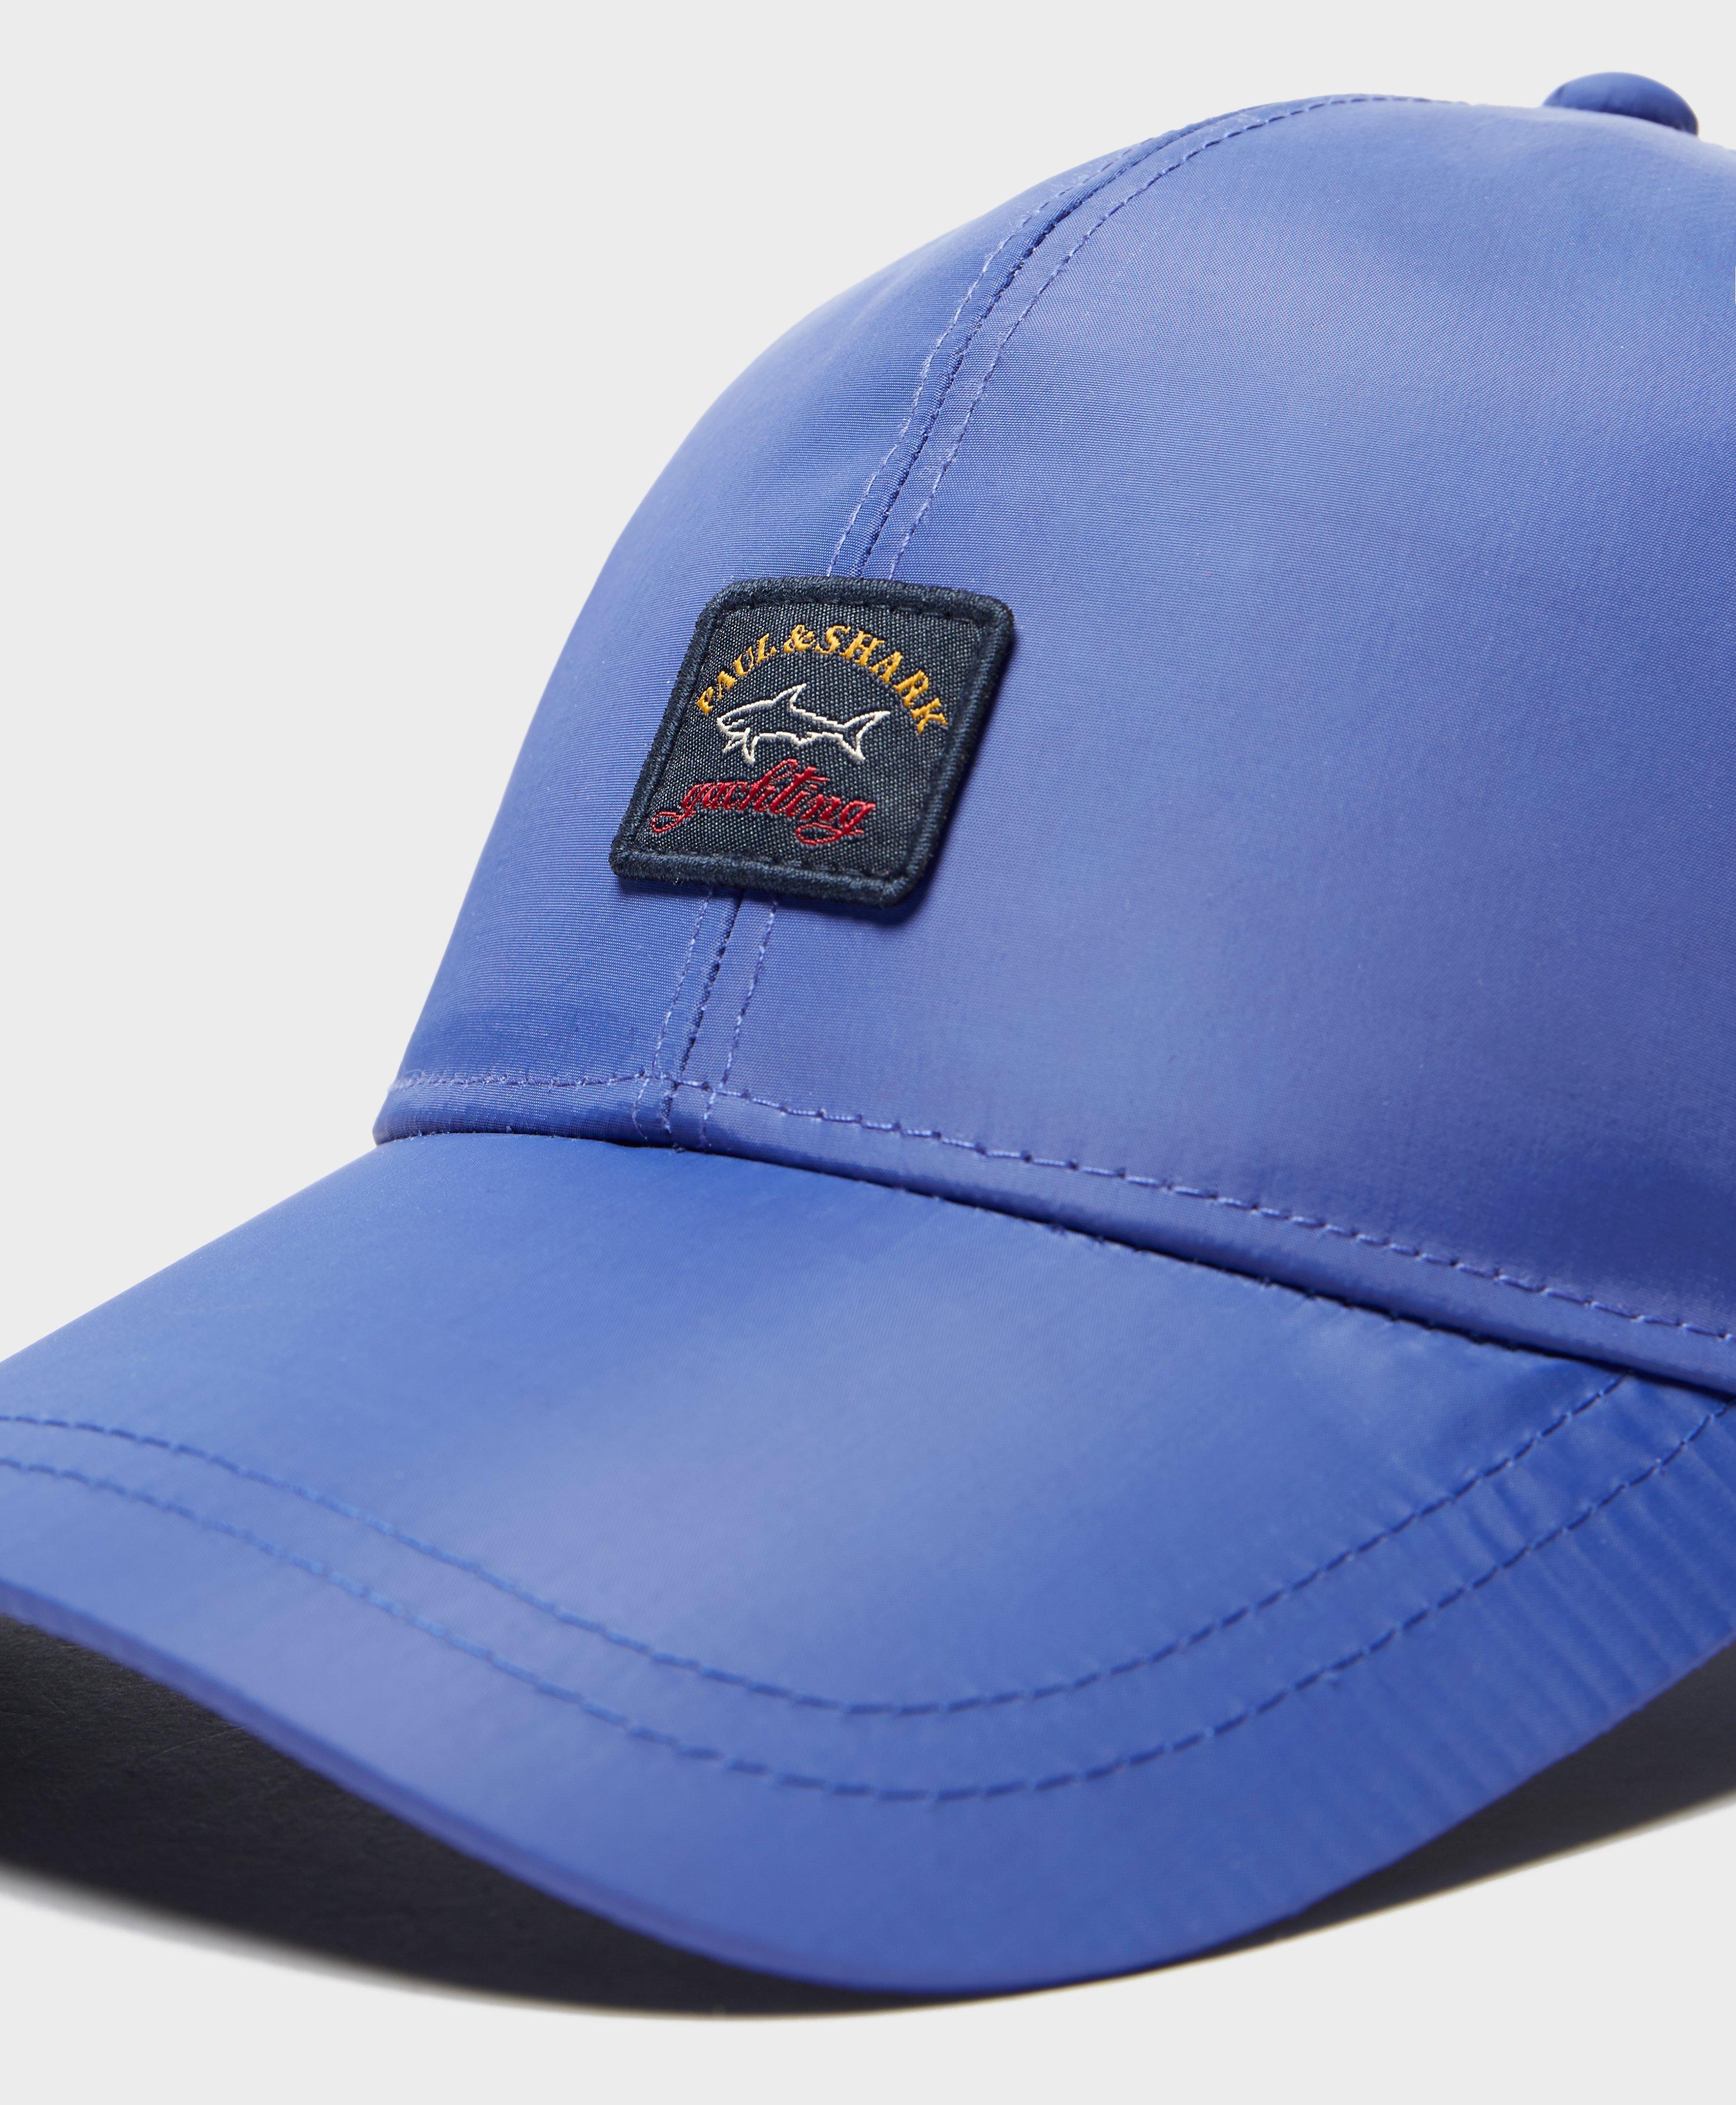 Paul & Shark Synthetic Nylon Logo Cap in Blue for Men - Lyst